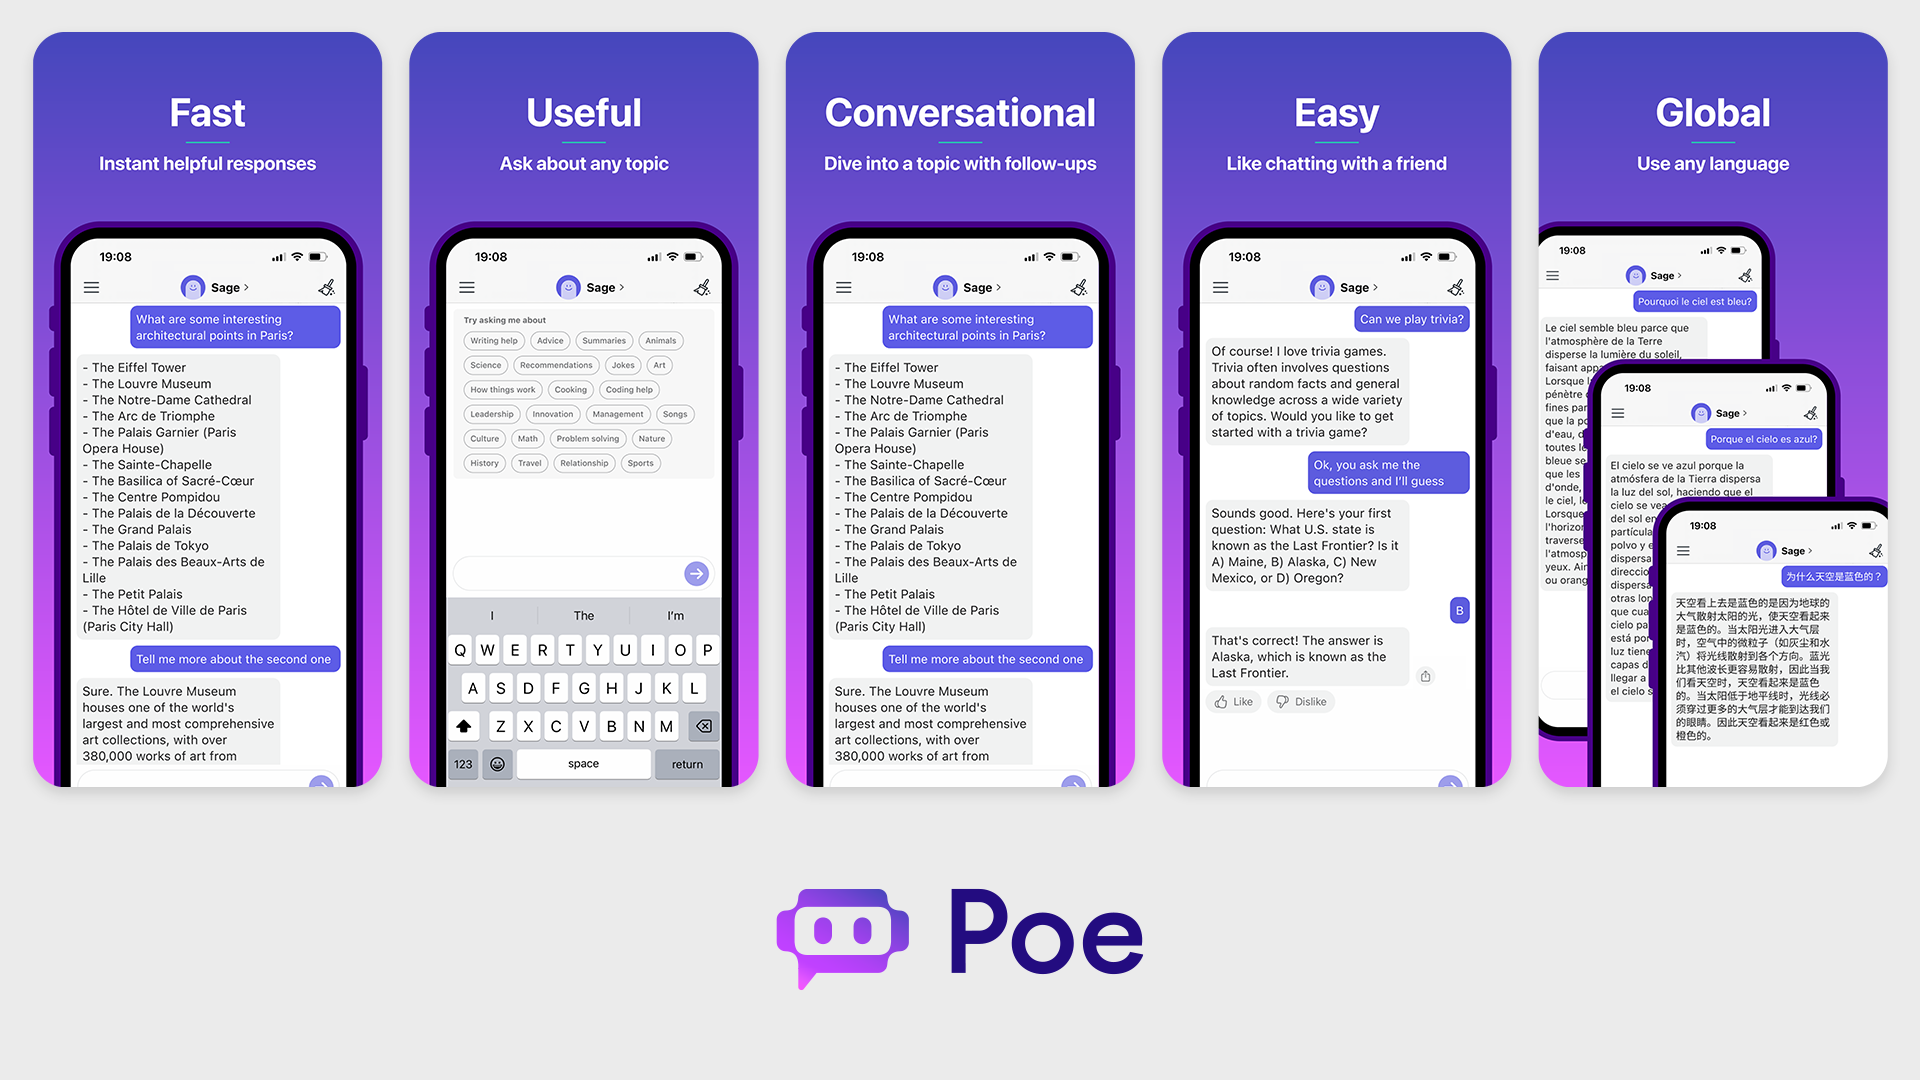 Quora's Poe udvider platformens muligheder med multibot-chat og virksomhedsløsninger